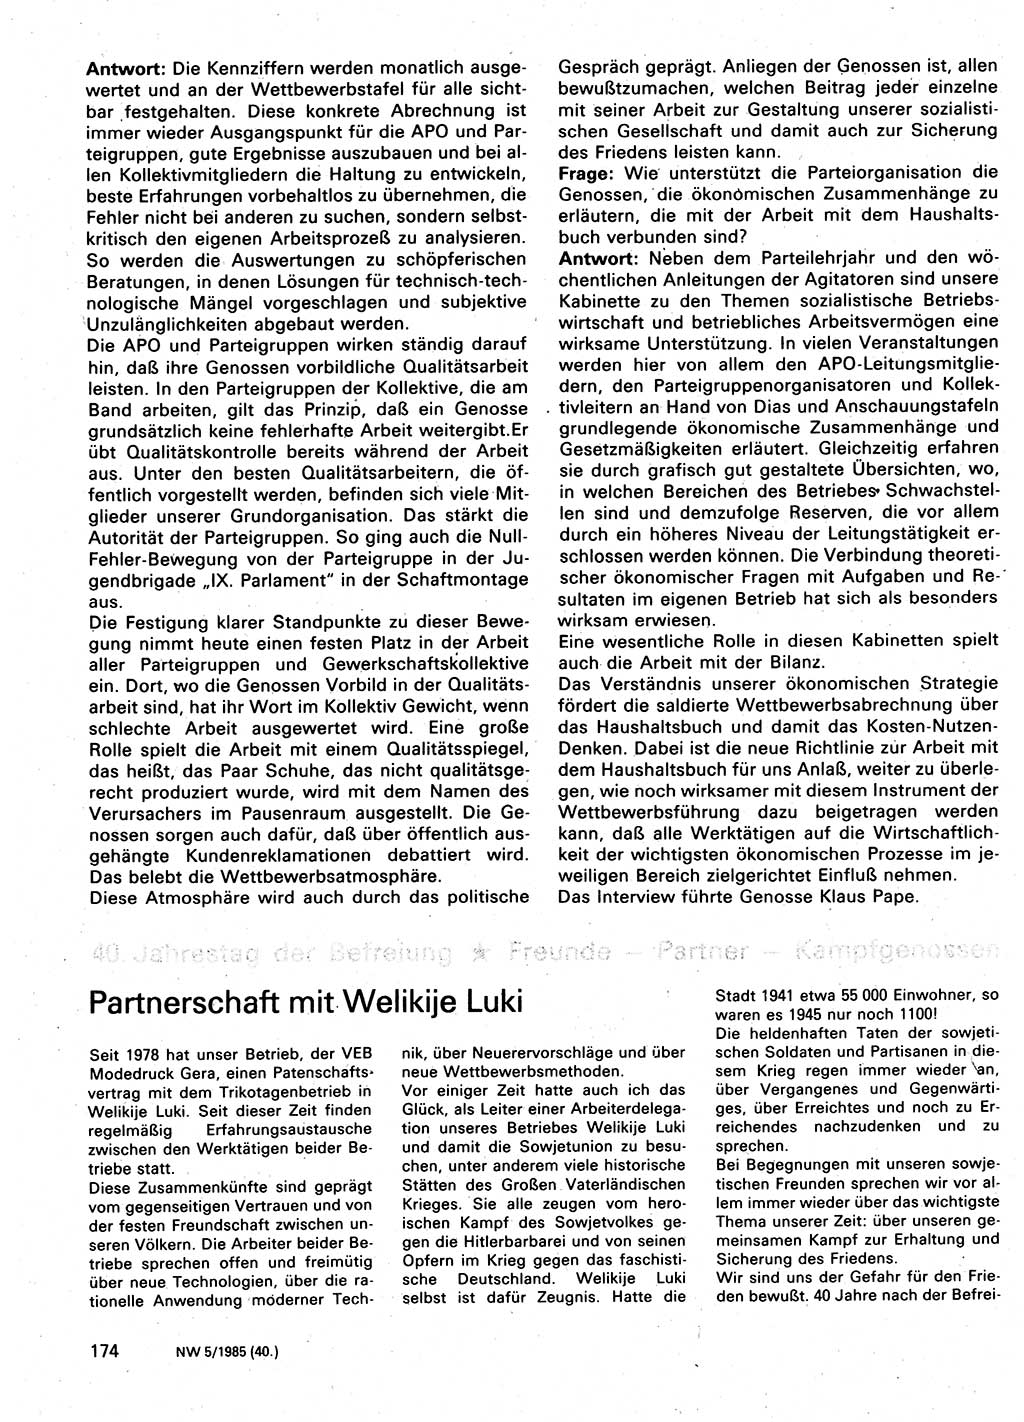 Neuer Weg (NW), Organ des Zentralkomitees (ZK) der SED (Sozialistische Einheitspartei Deutschlands) für Fragen des Parteilebens, 40. Jahrgang [Deutsche Demokratische Republik (DDR)] 1985, Seite 174 (NW ZK SED DDR 1985, S. 174)